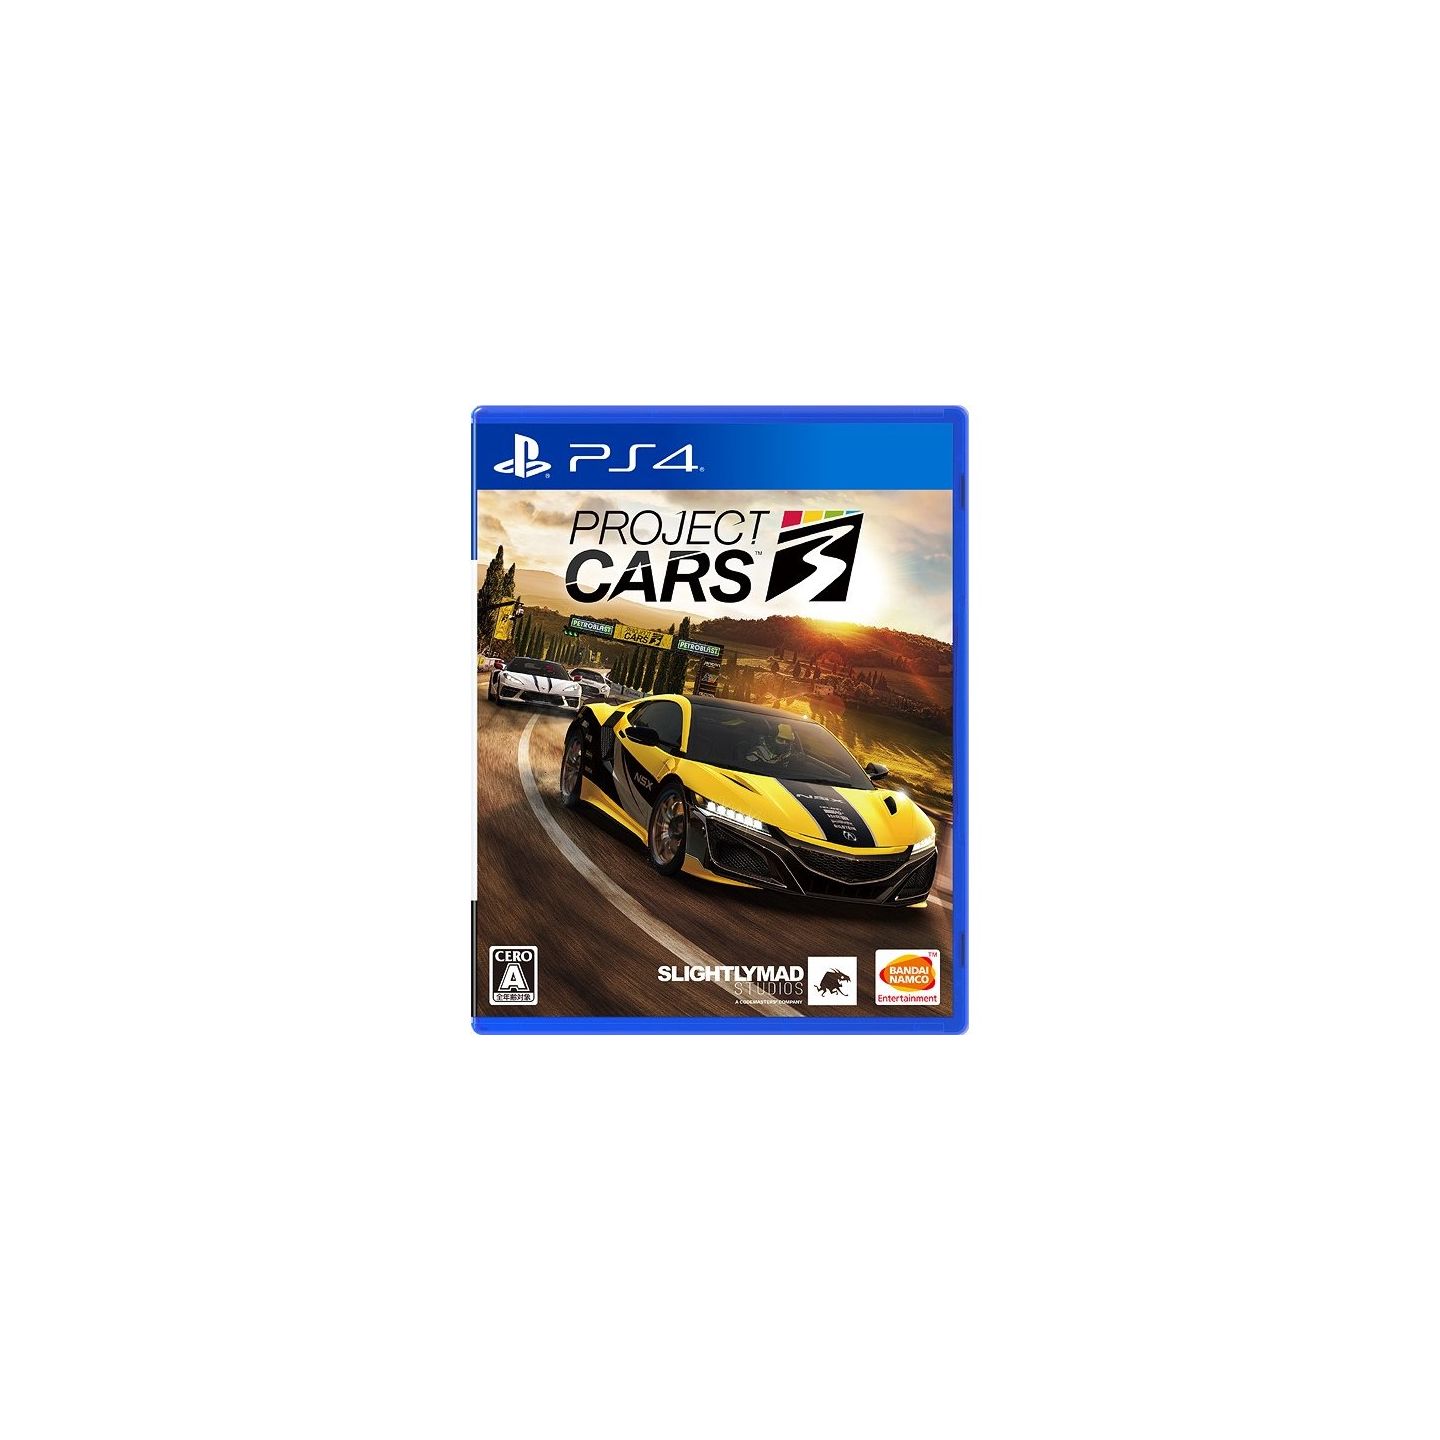  Project CARS 3 - PlayStation 4 : Bandai Namco Games